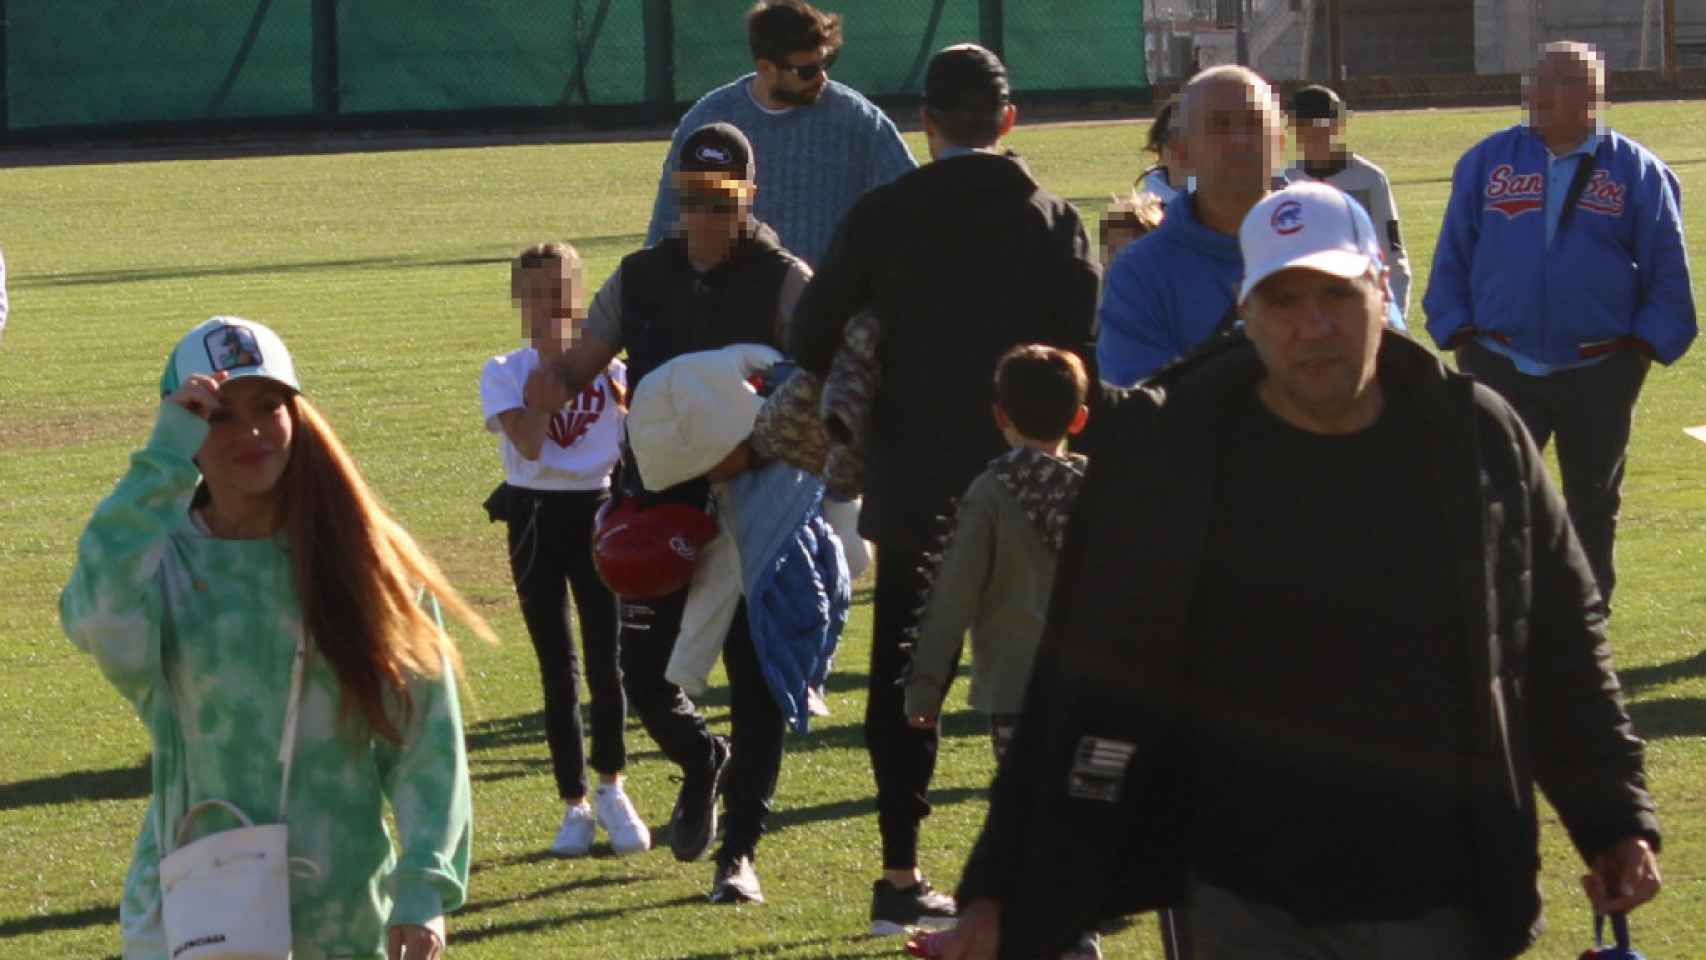 Shakira y Piqué tras el juego de béisbol de uno de sus hijos.